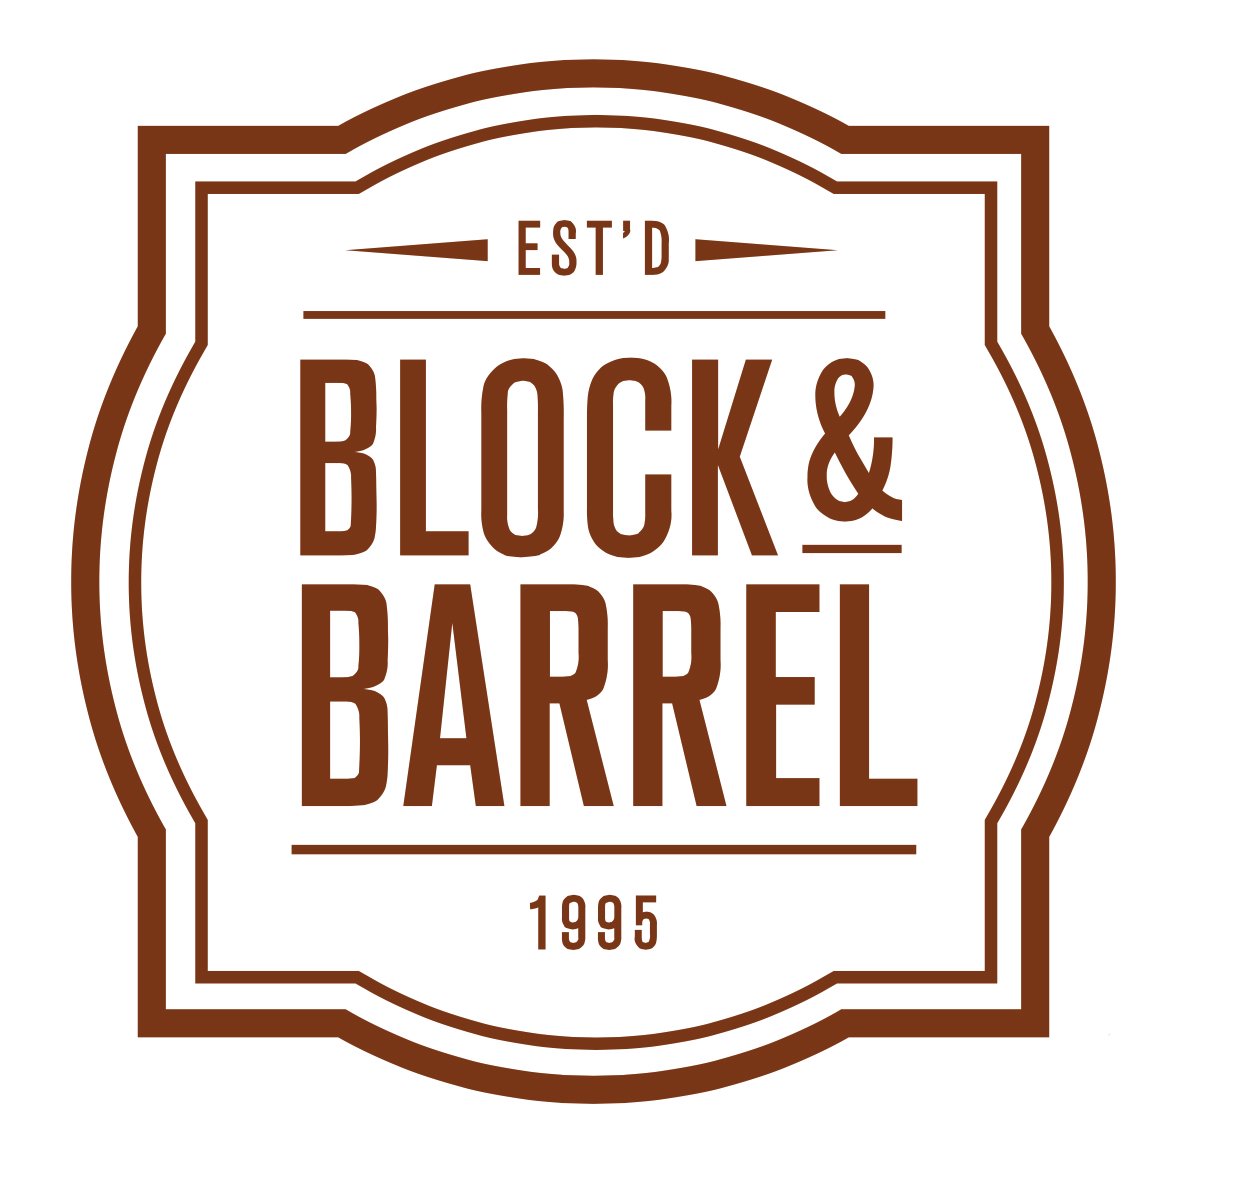  EST'D BLOCK &amp; BARREL 1995